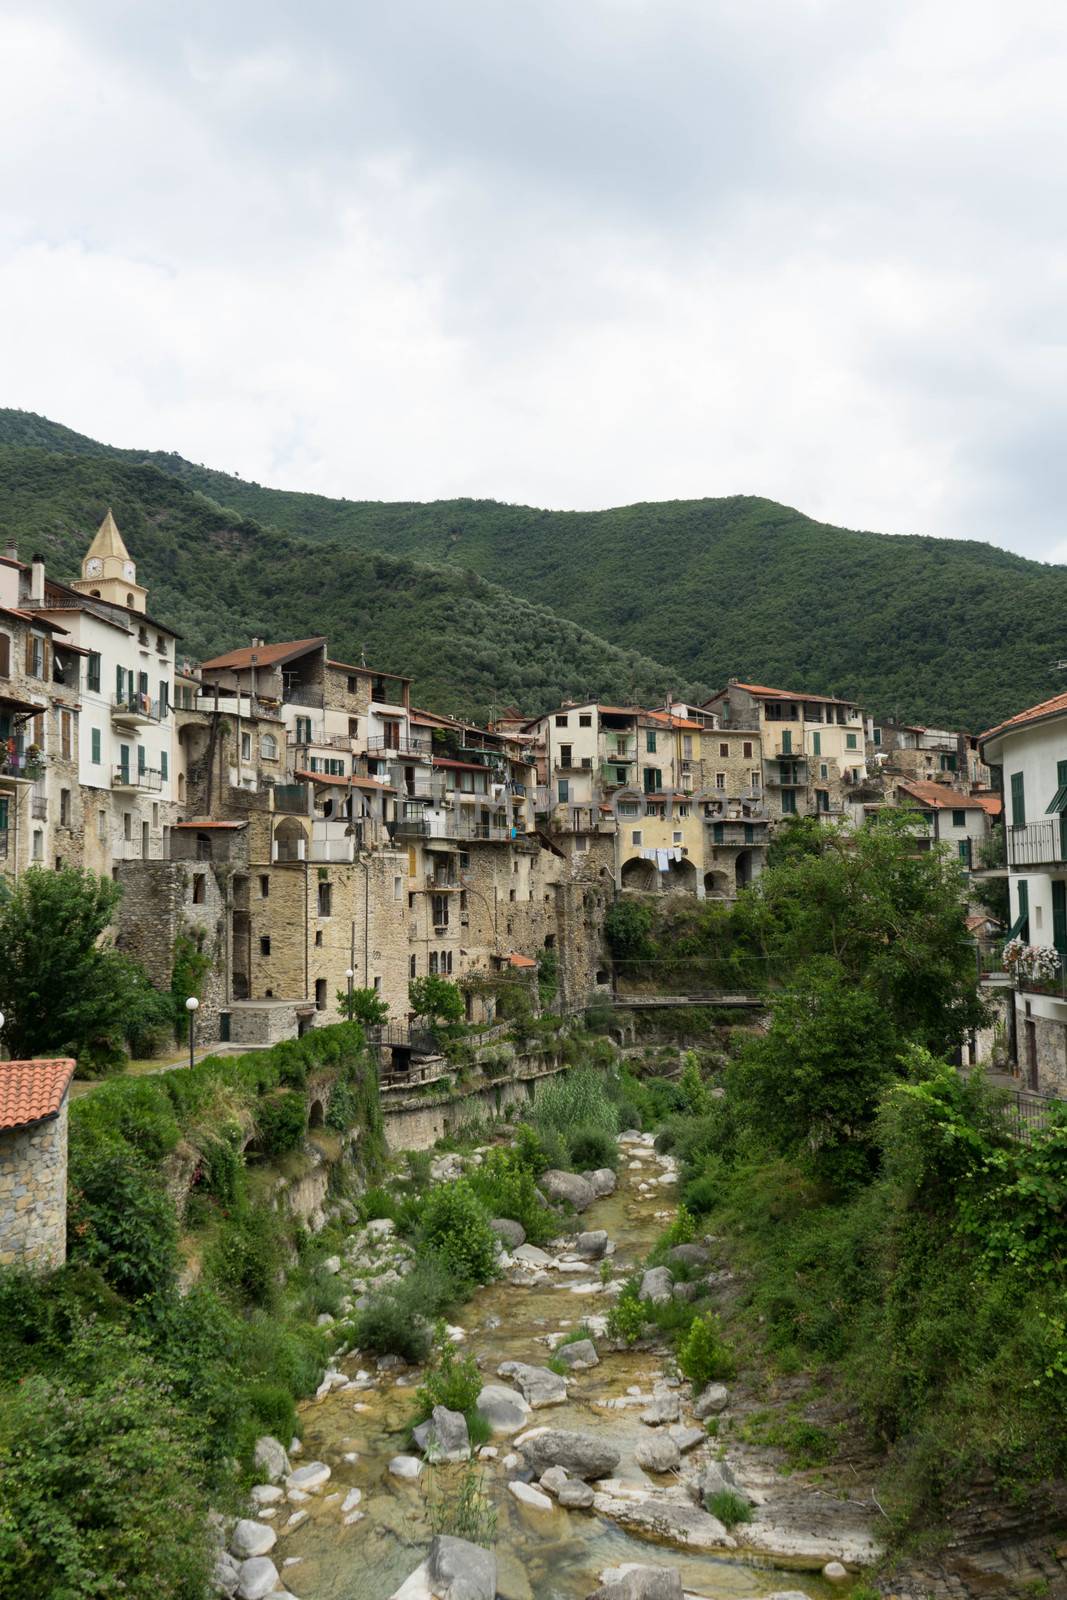 Cityscape of Rocchetta Nervina, Liguria - Italy by cosca